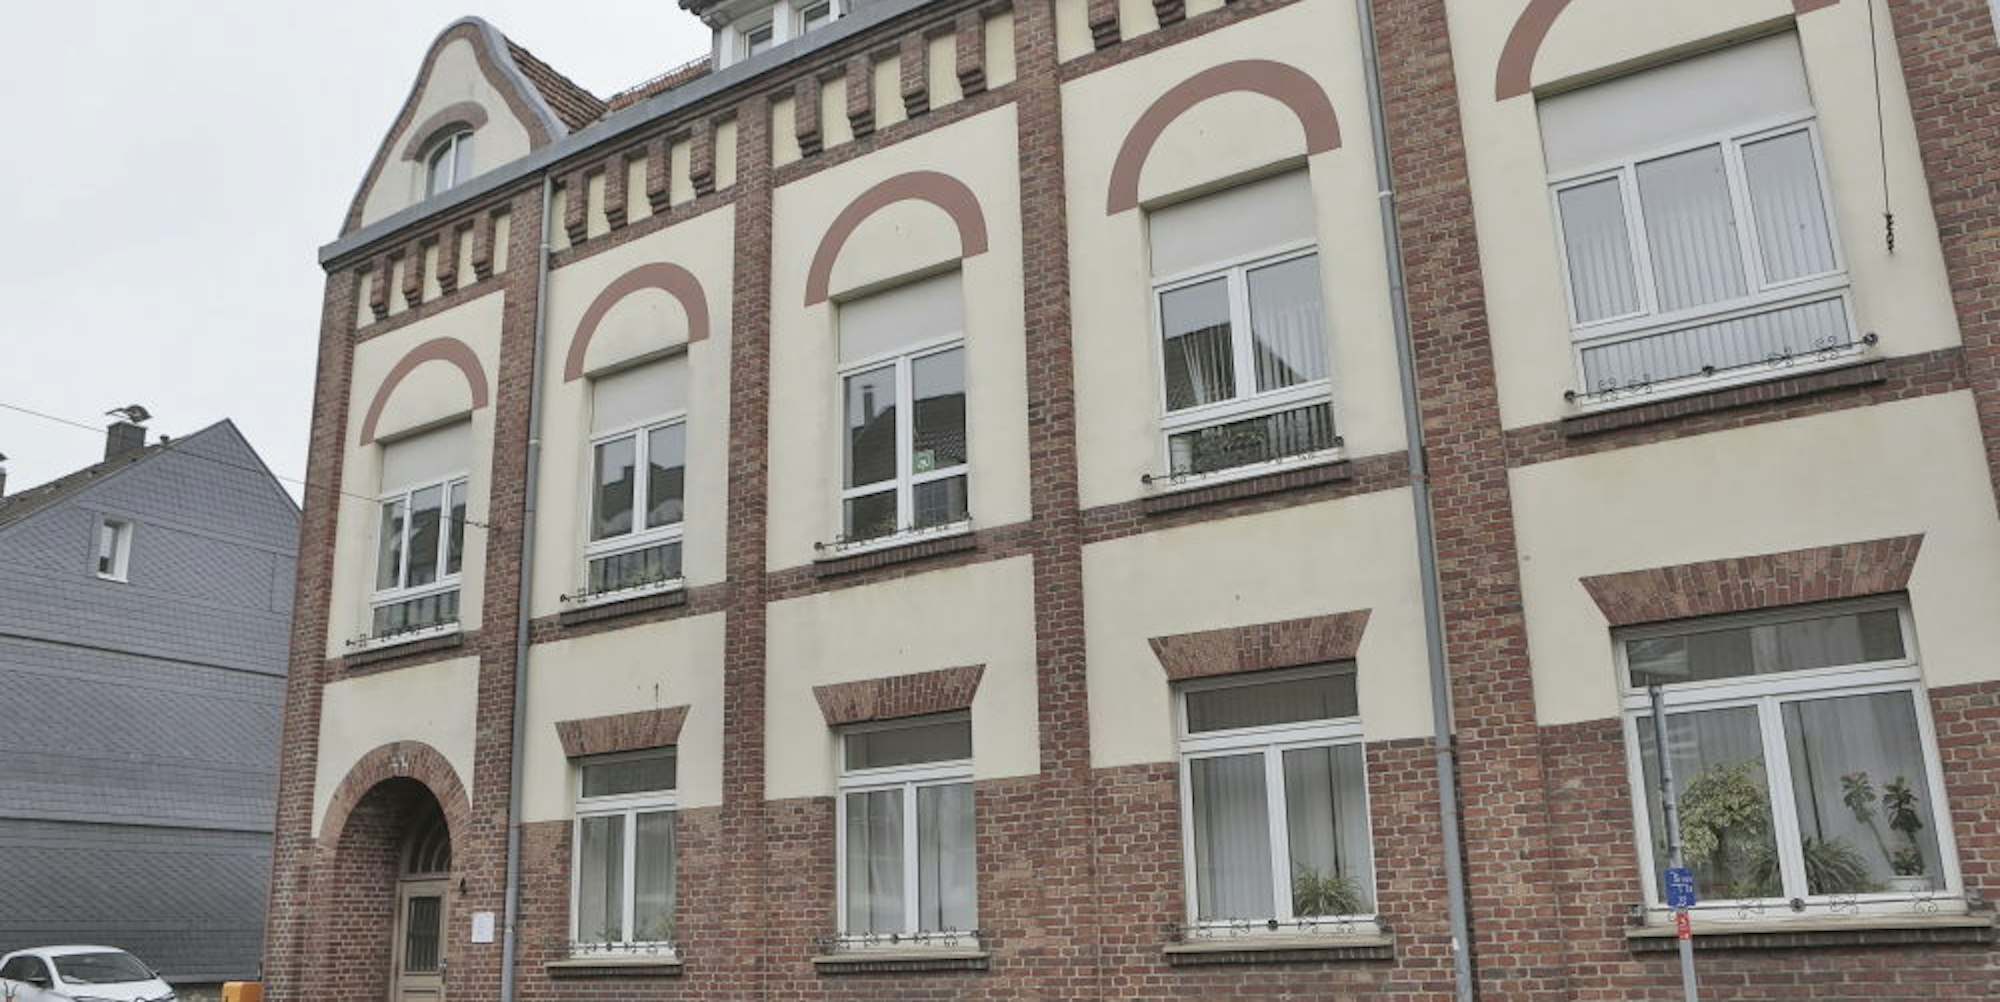 Die Fassade des 1904 errichteten Kolpinghauses weist starke Ähnlichkeiten zum alten Krankenhaus auf.